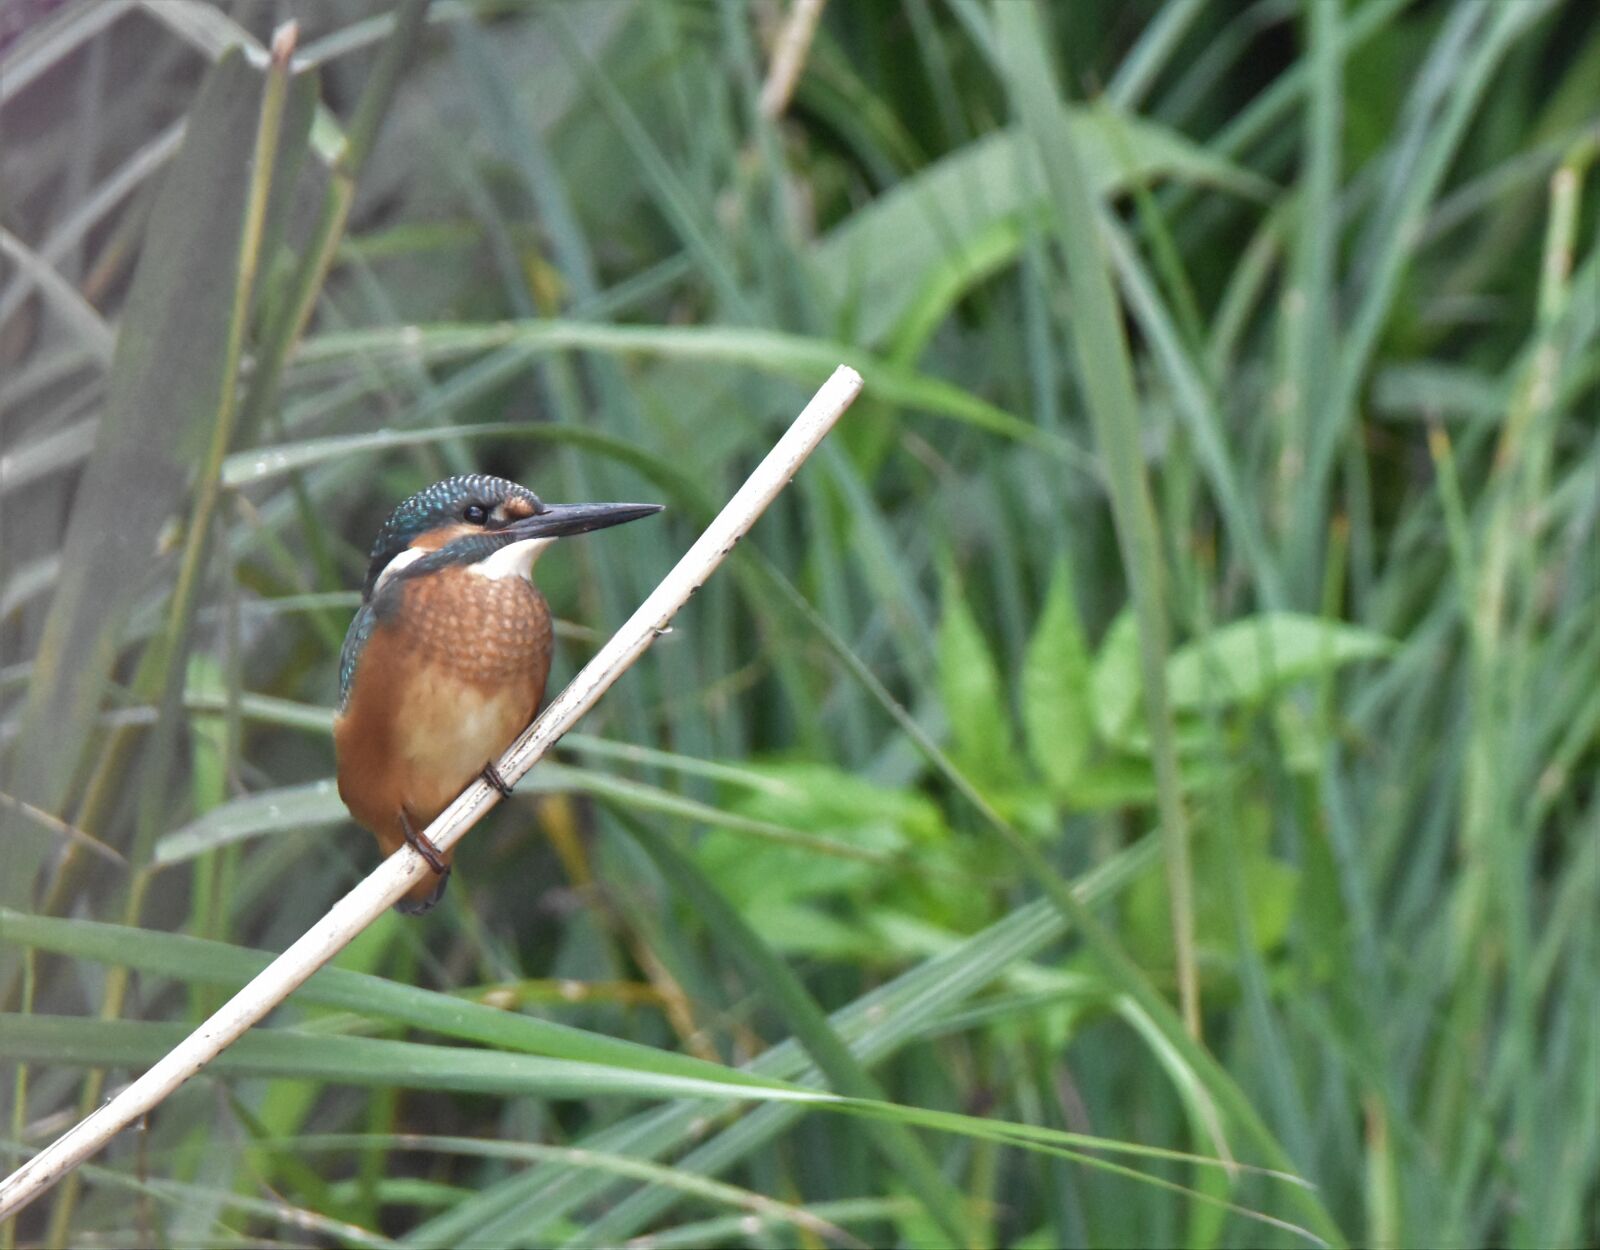 Nikon D5600 sample photo. Kingfisher, nature, bird photography